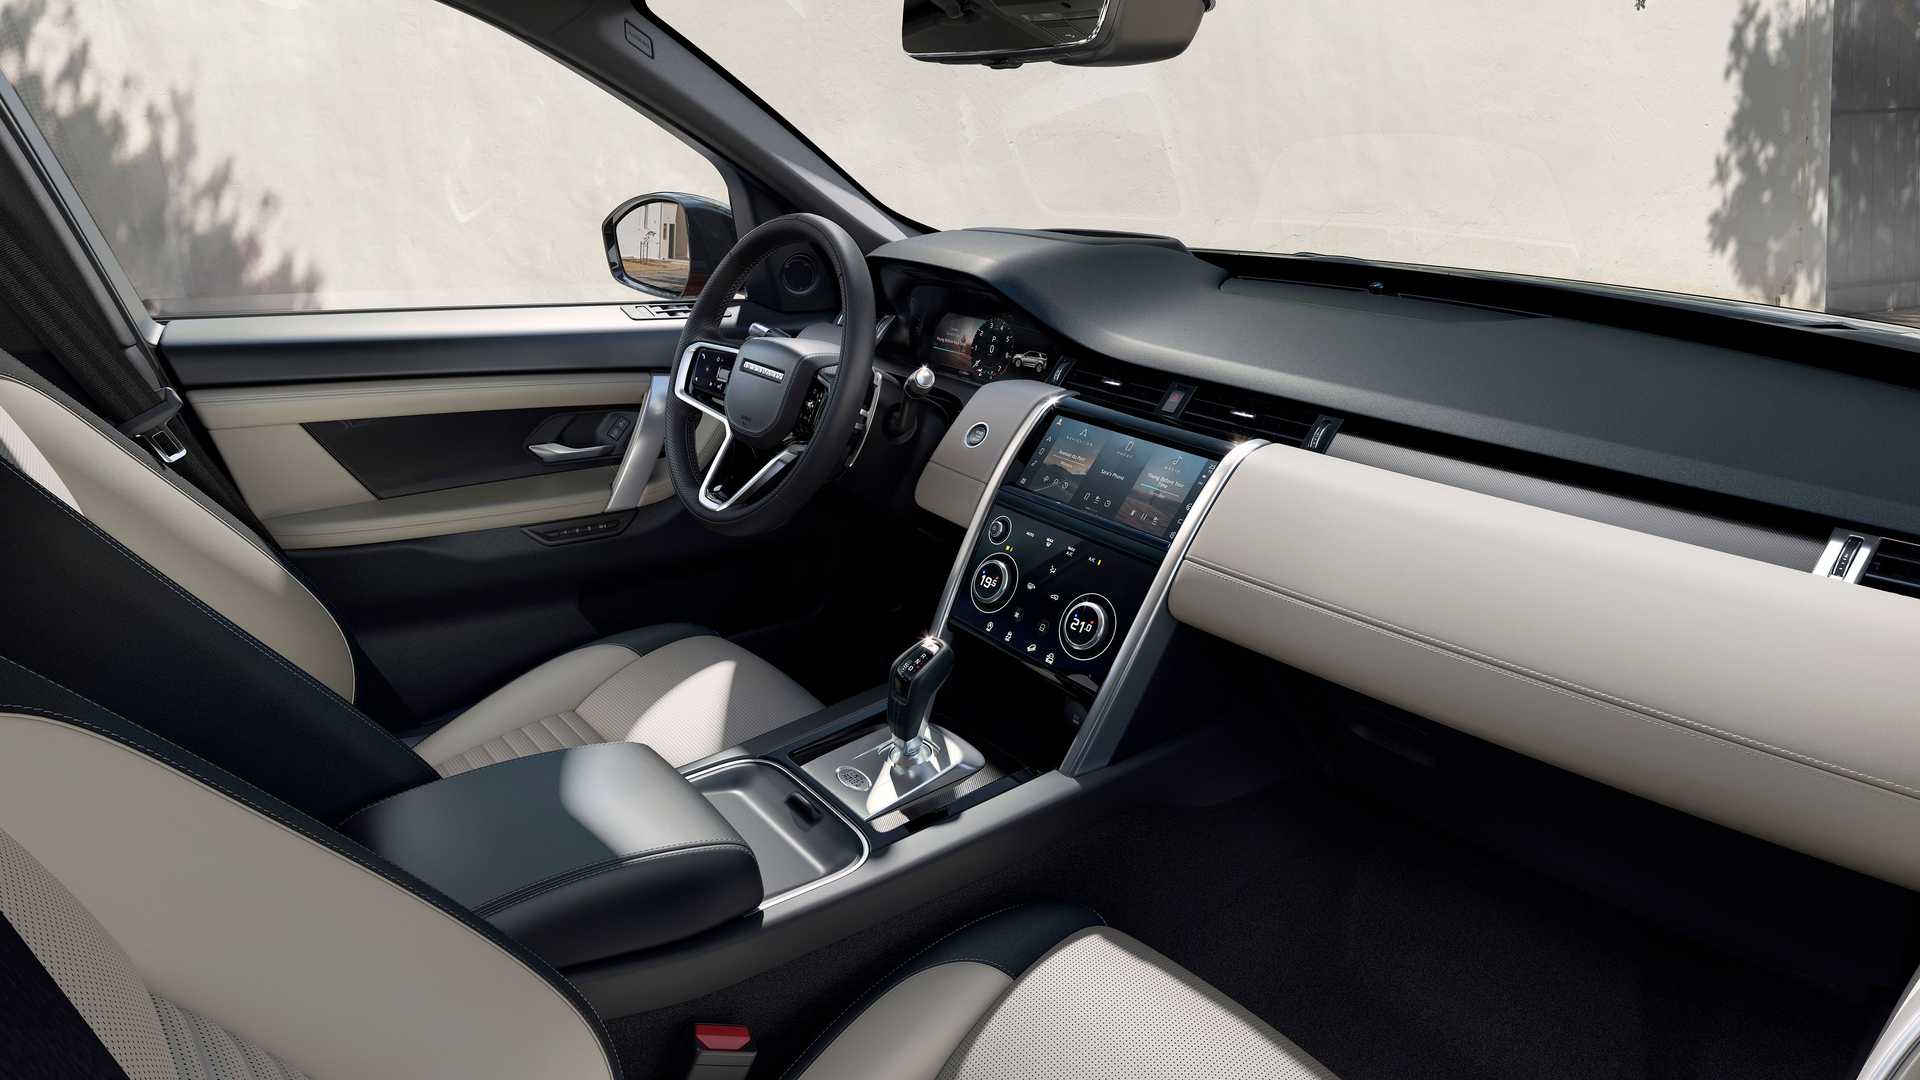 Range Rover đời mới lần đầu lộ nội thất: Thêm màn hình lớn, nhiều ...